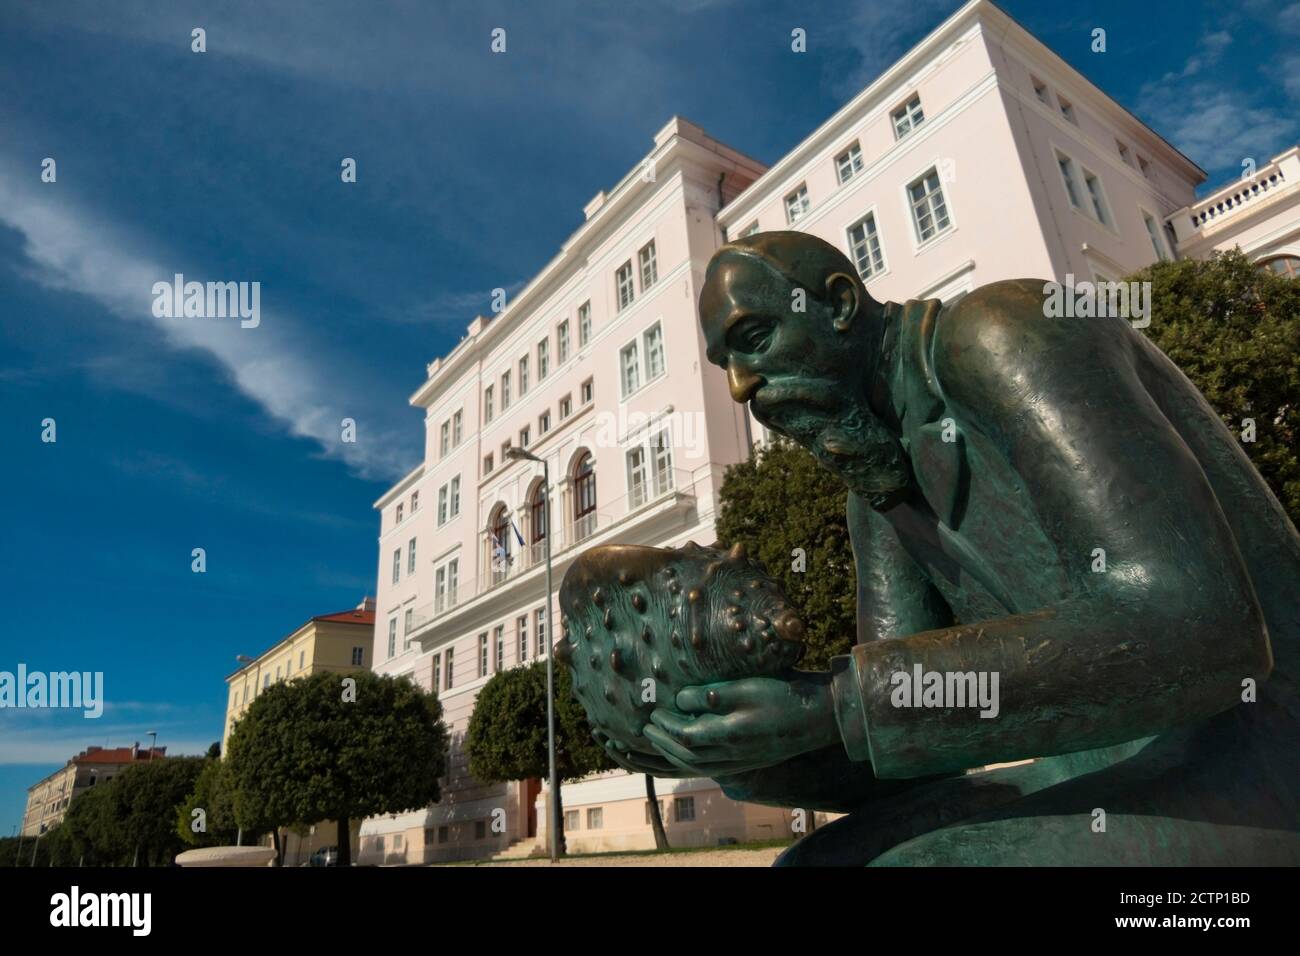 Ingresso al Rettorato dell'Università di Zara, Croazia. Monumento di Spiridon Brusina, malacologo croato. Statua dello scultore Ratko Petric. Foto Stock